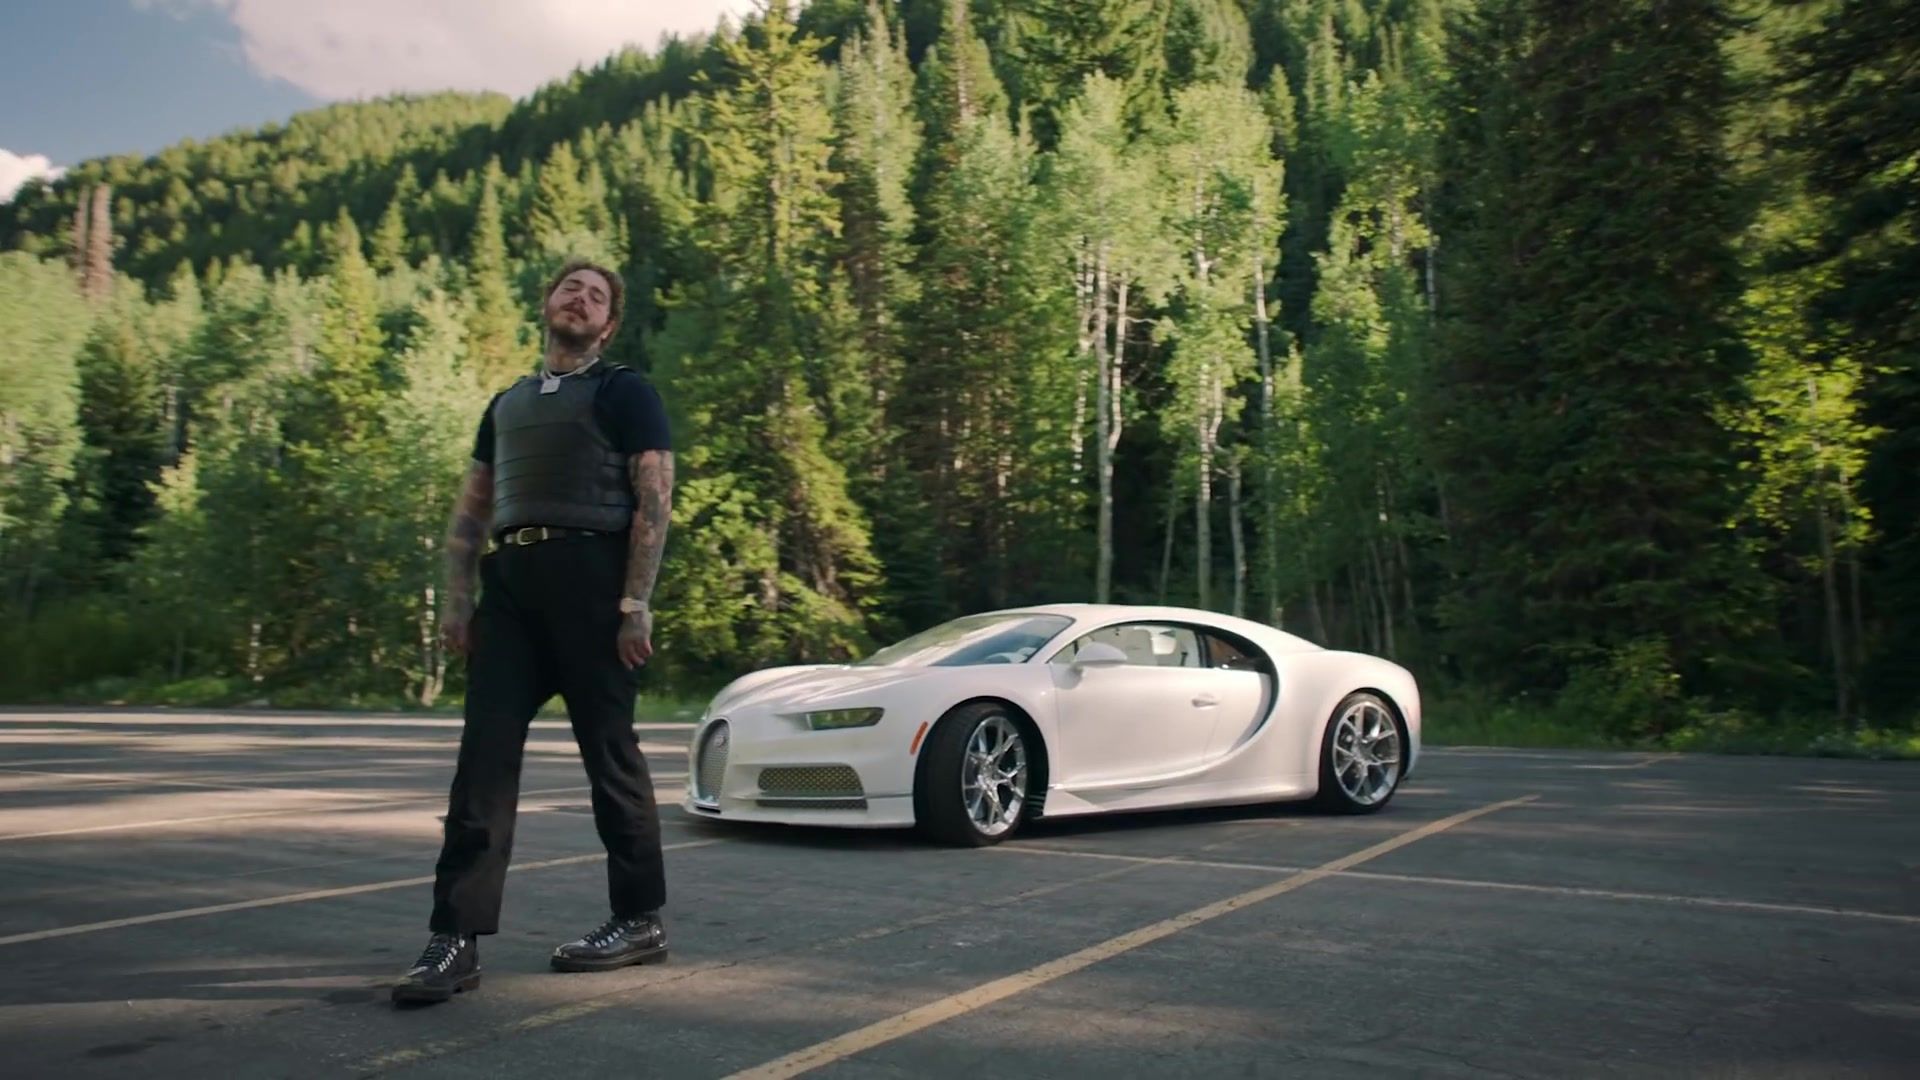 Post Malone walks alongside his white Bugatti Chiron